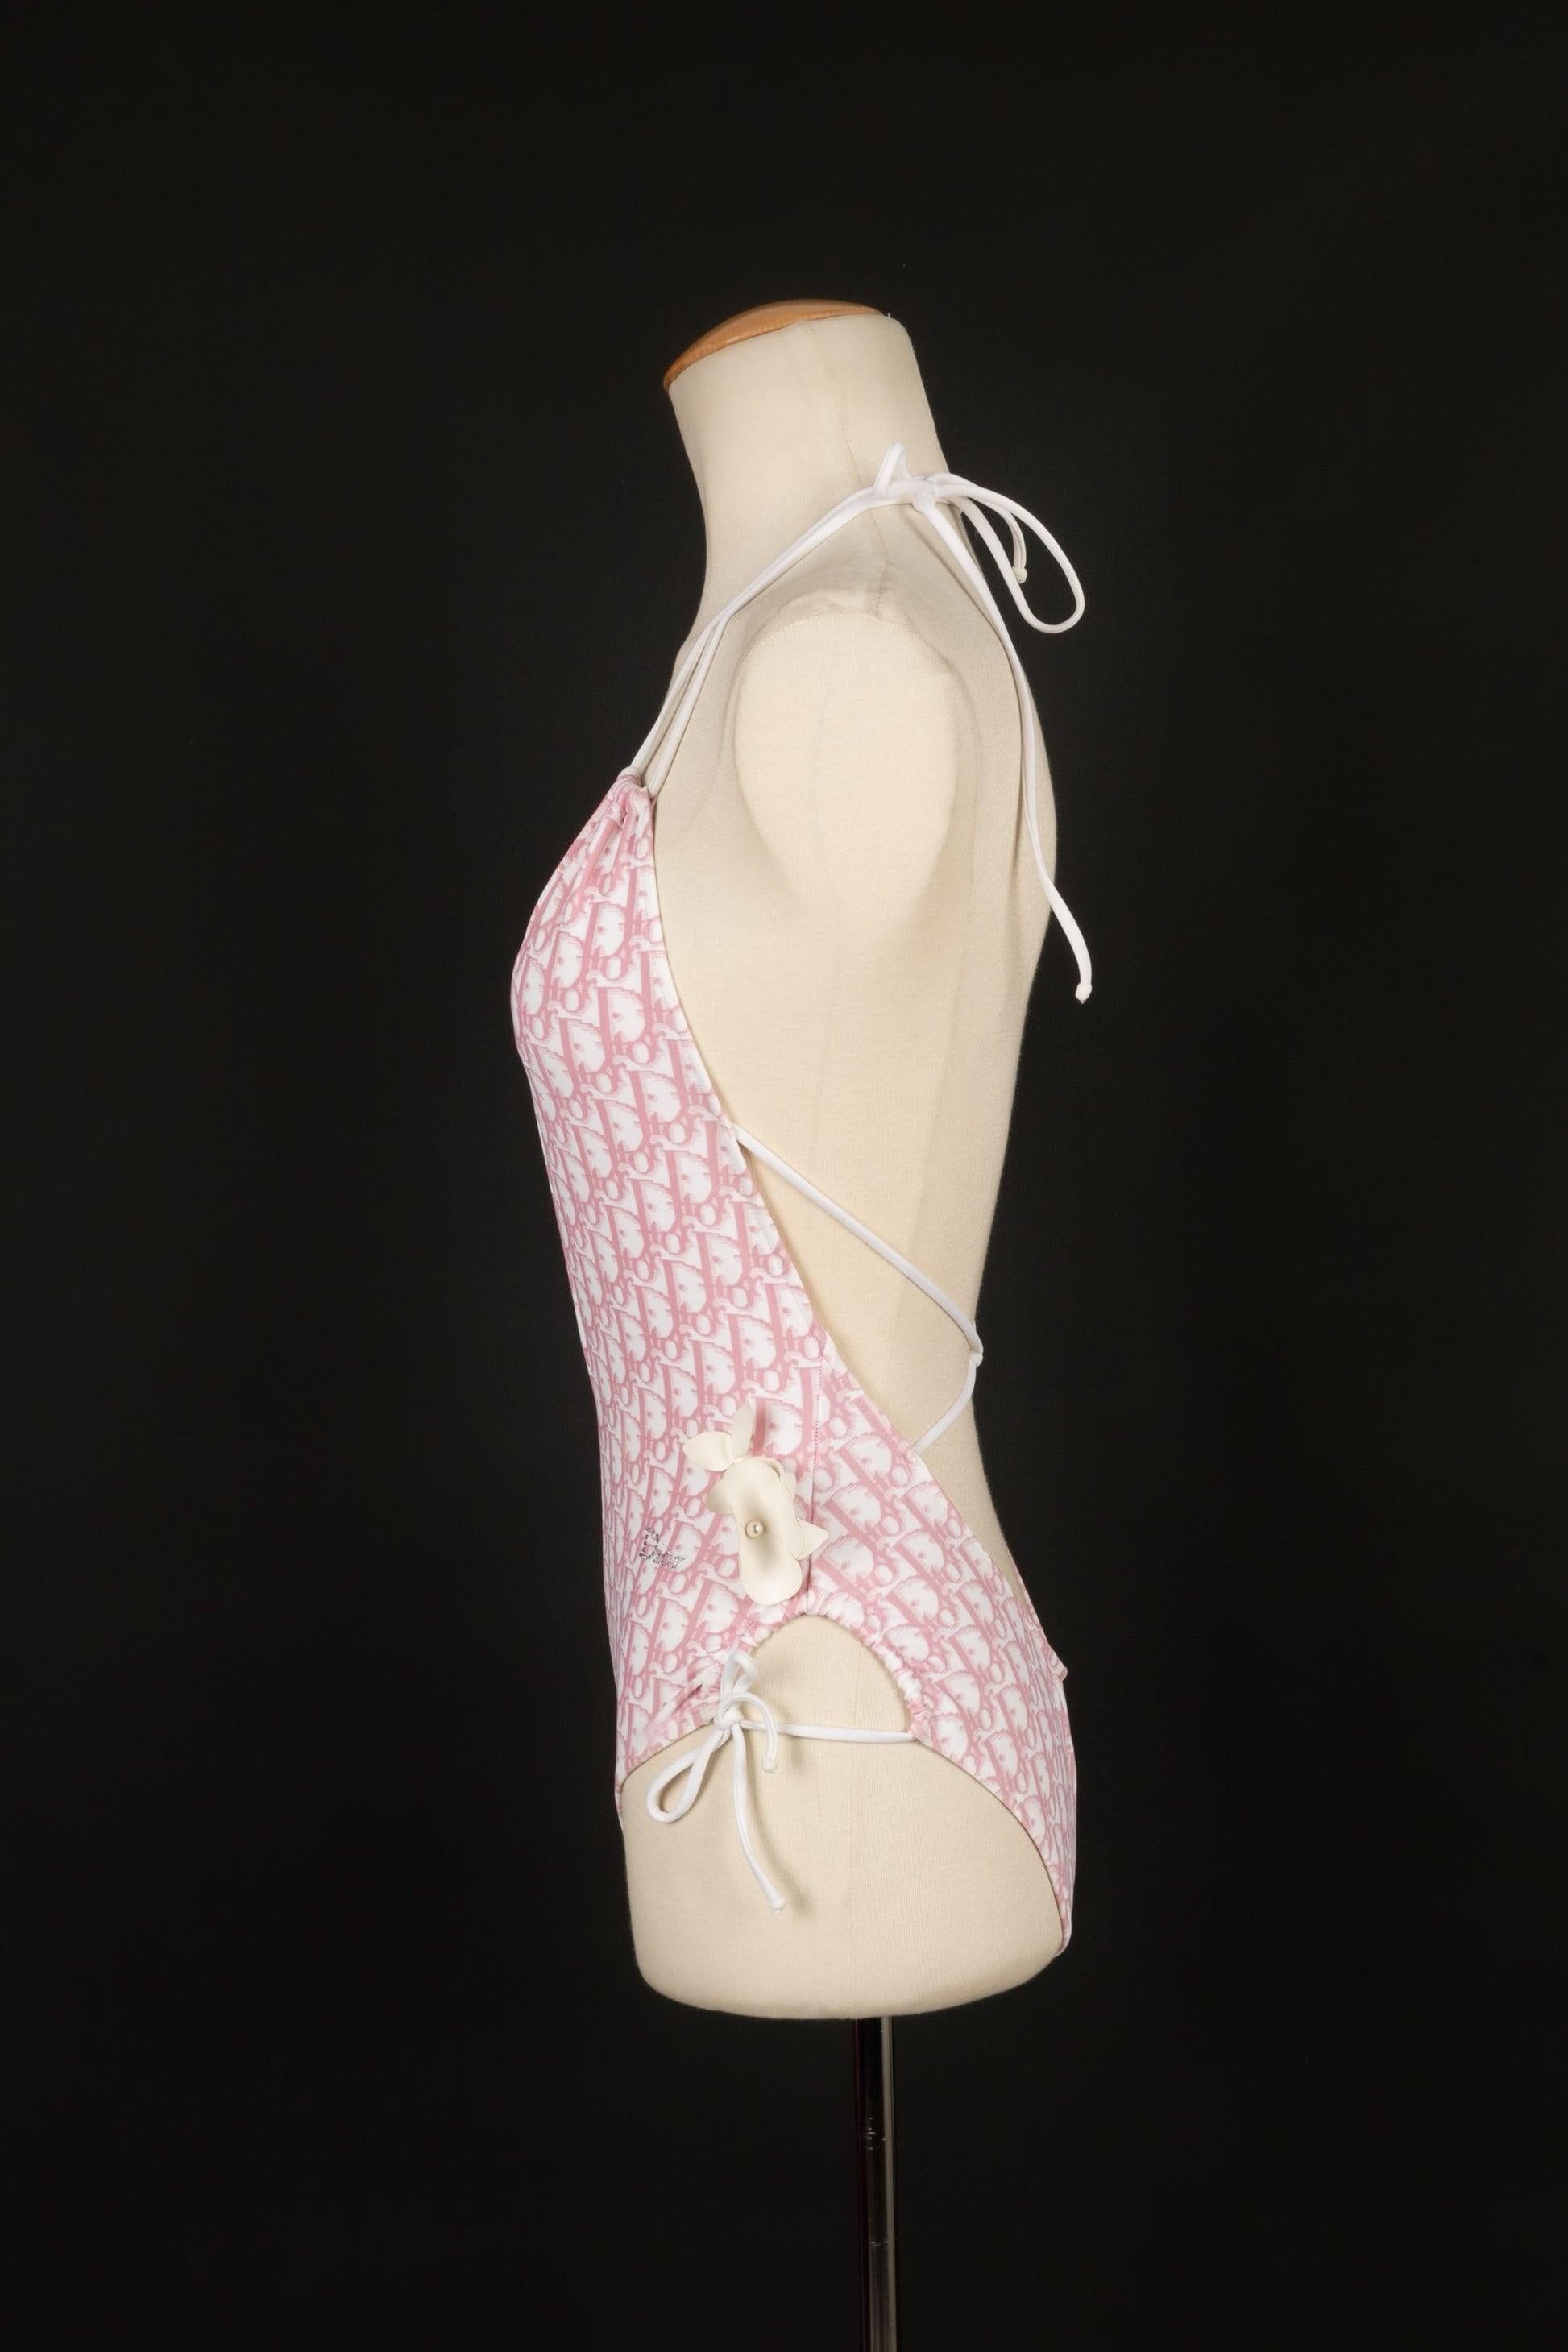 Dior - (Made in France) Einteiliger Badeanzug mit rosa und weißem Markenzeichen. Größe 36FR.

Zusätzliche Informationen:
Zustand: Sehr guter Zustand

Verkäufer-Referenz: FH184